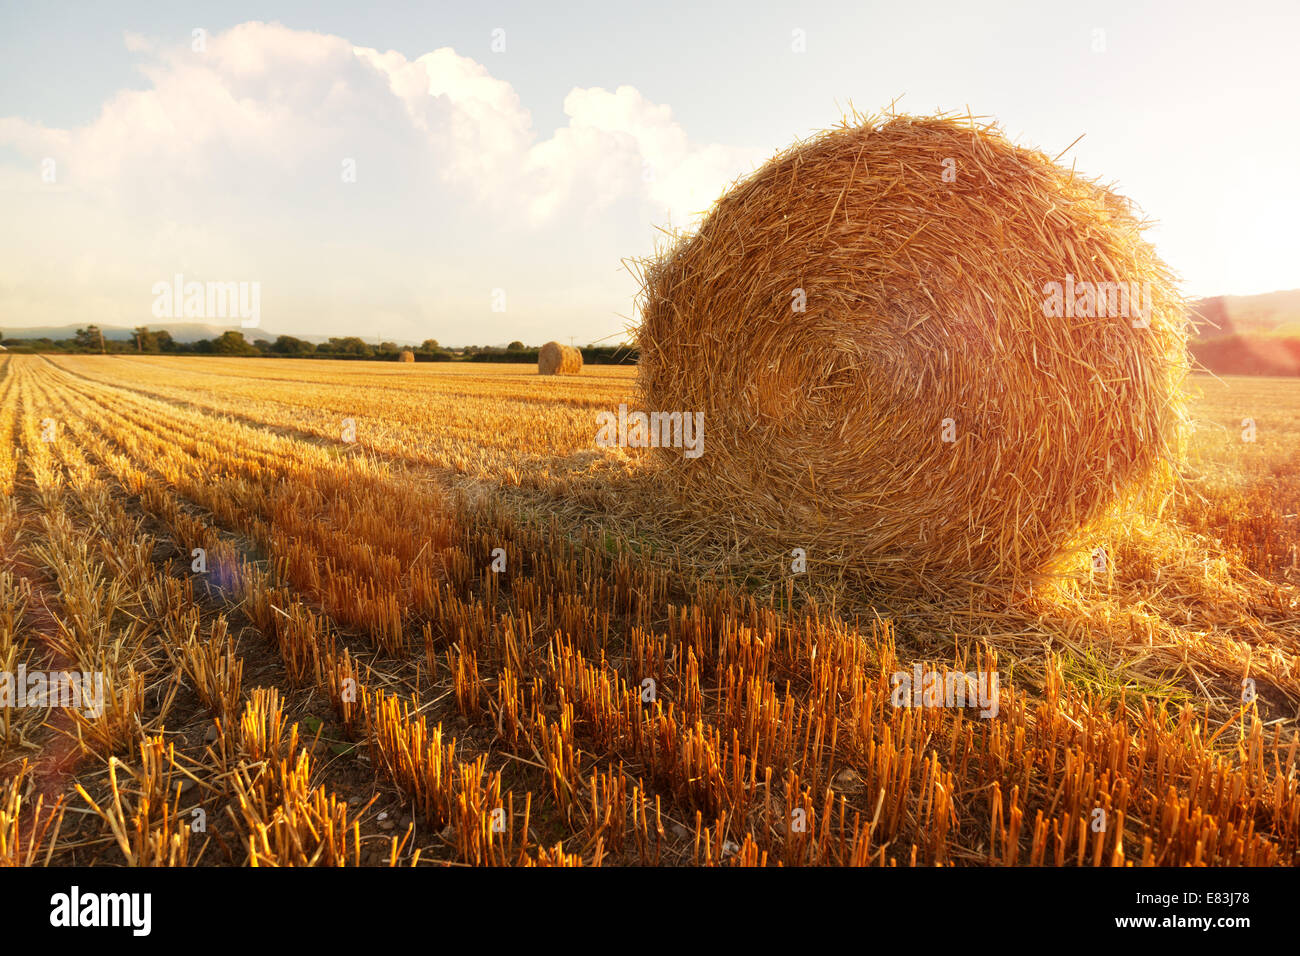 Hay bales in golden field Stock Photo